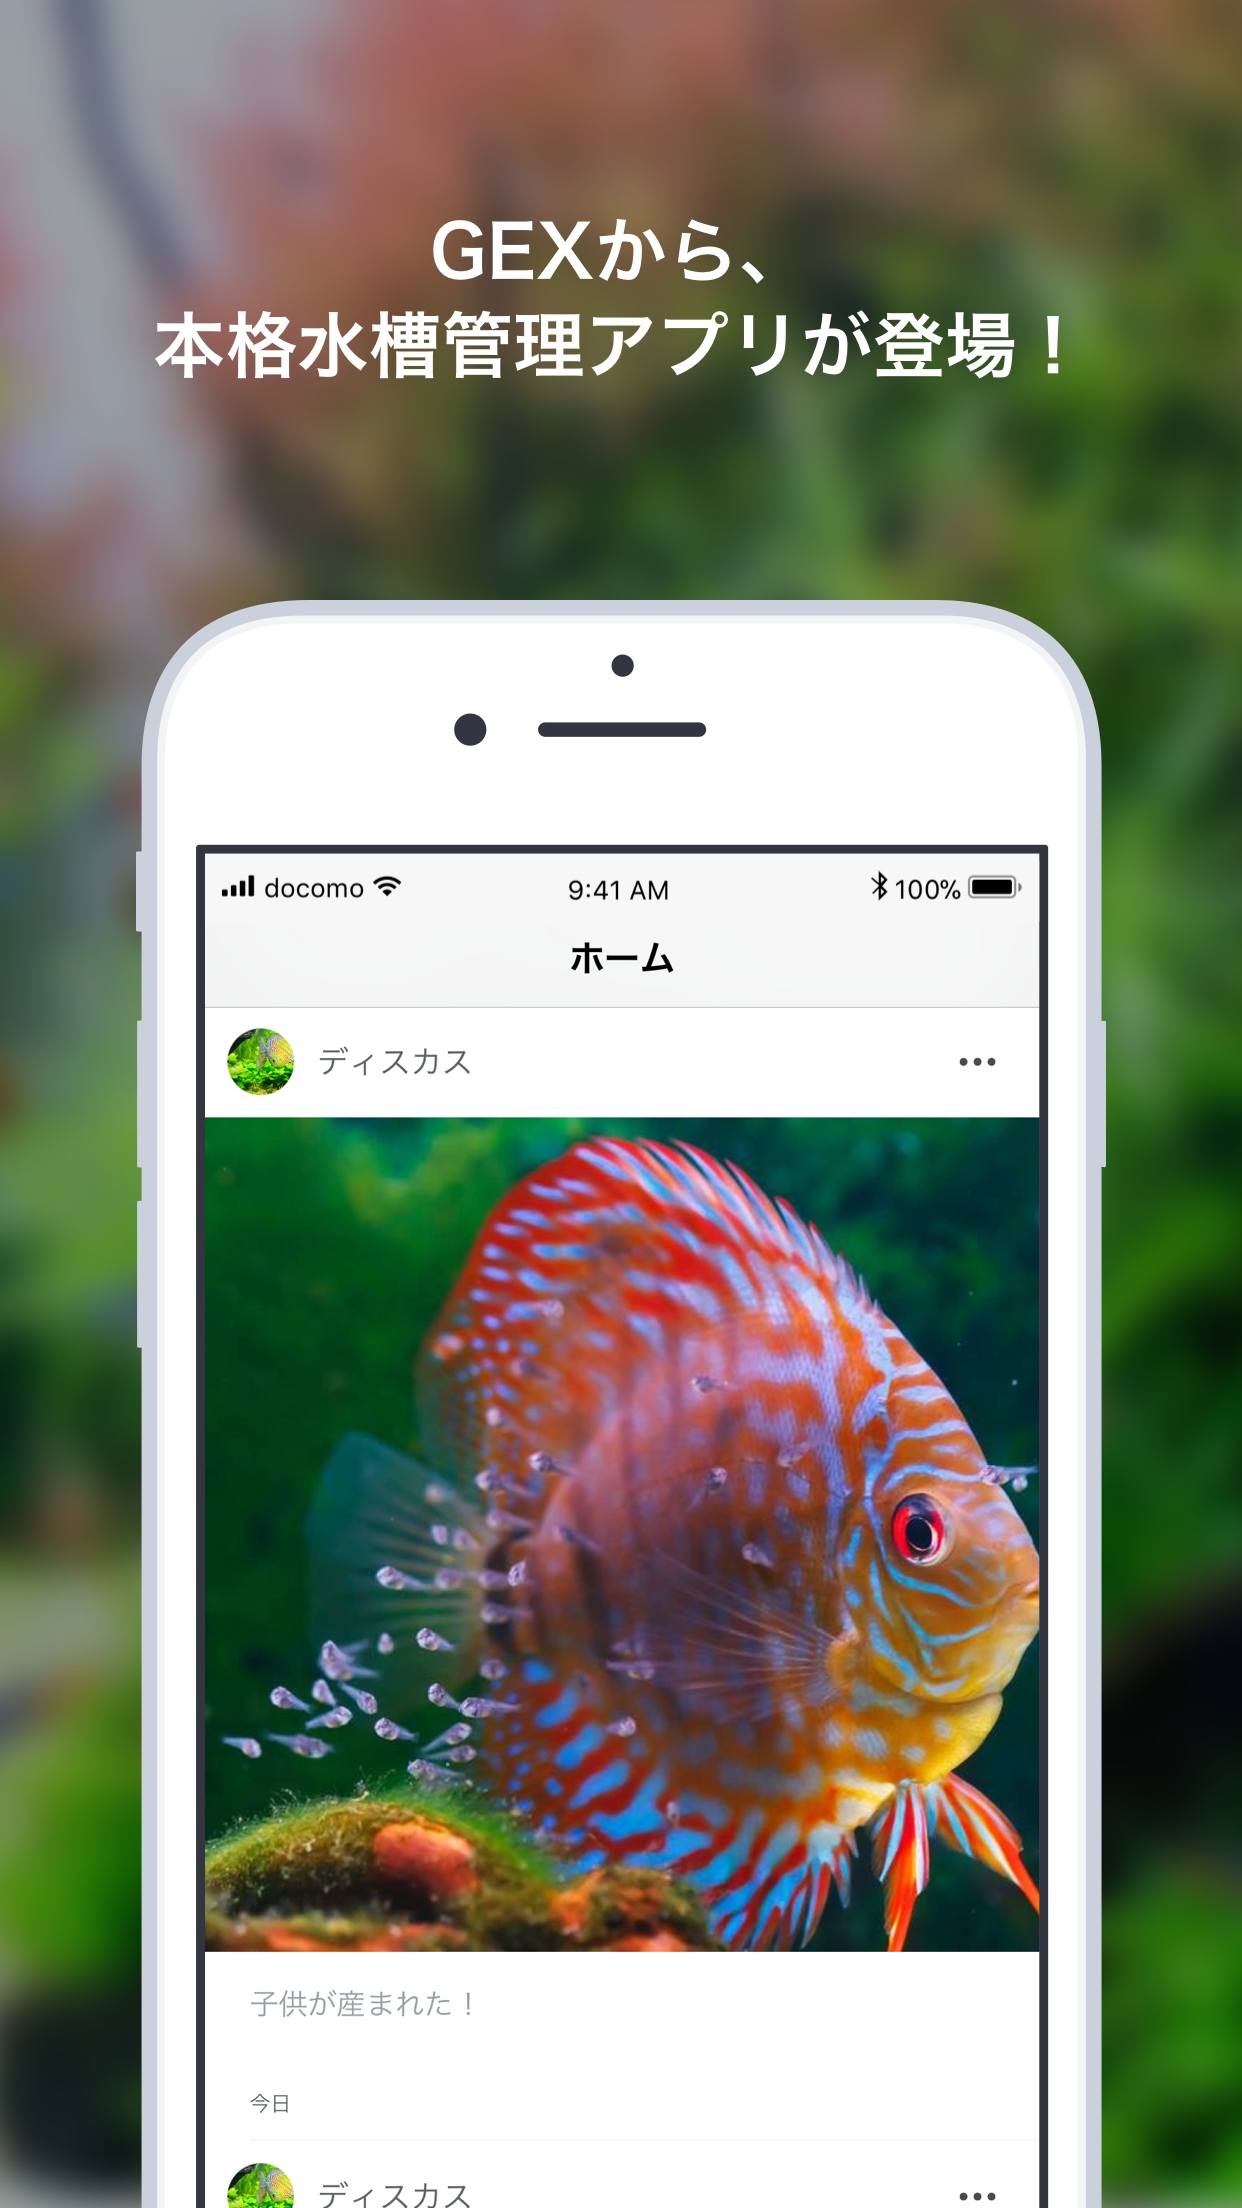 スマホで魚の成長を簡単に記録 Gex公式水槽管理アプリ アクレコ 配信開始 株式会社コノルのプレスリリース